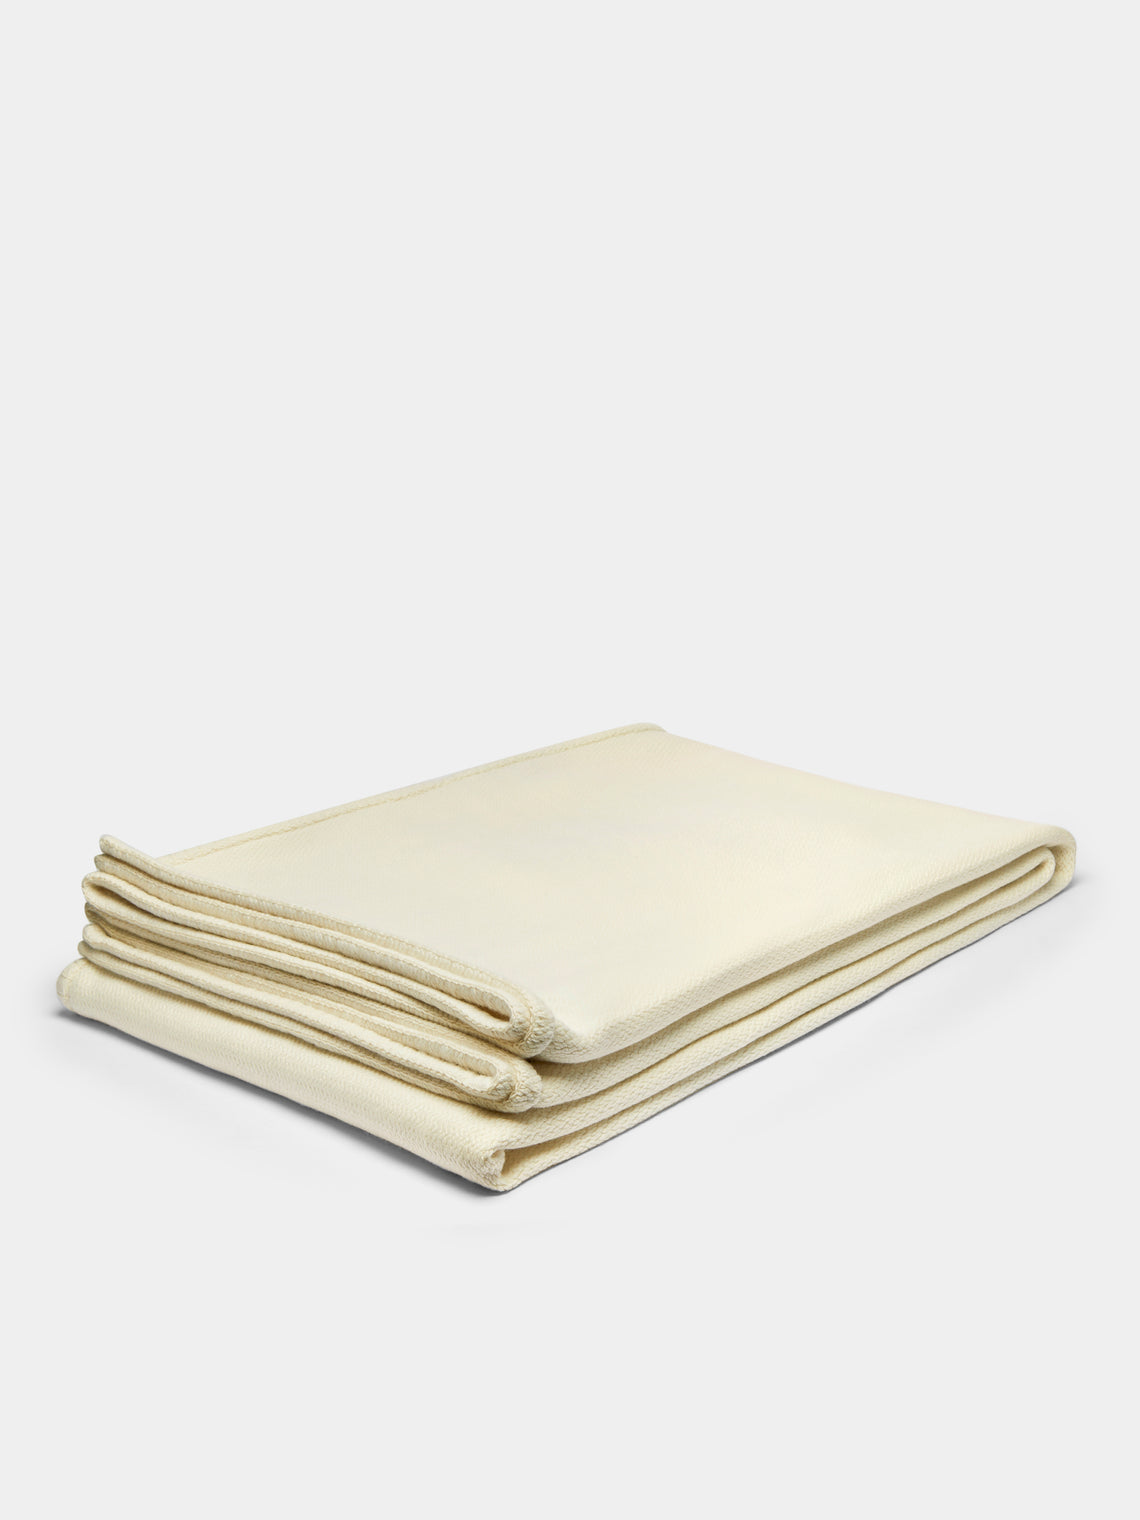 Rose Uniacke - Hand-Dyed Cashmere Large Blanket - Cream - ABASK